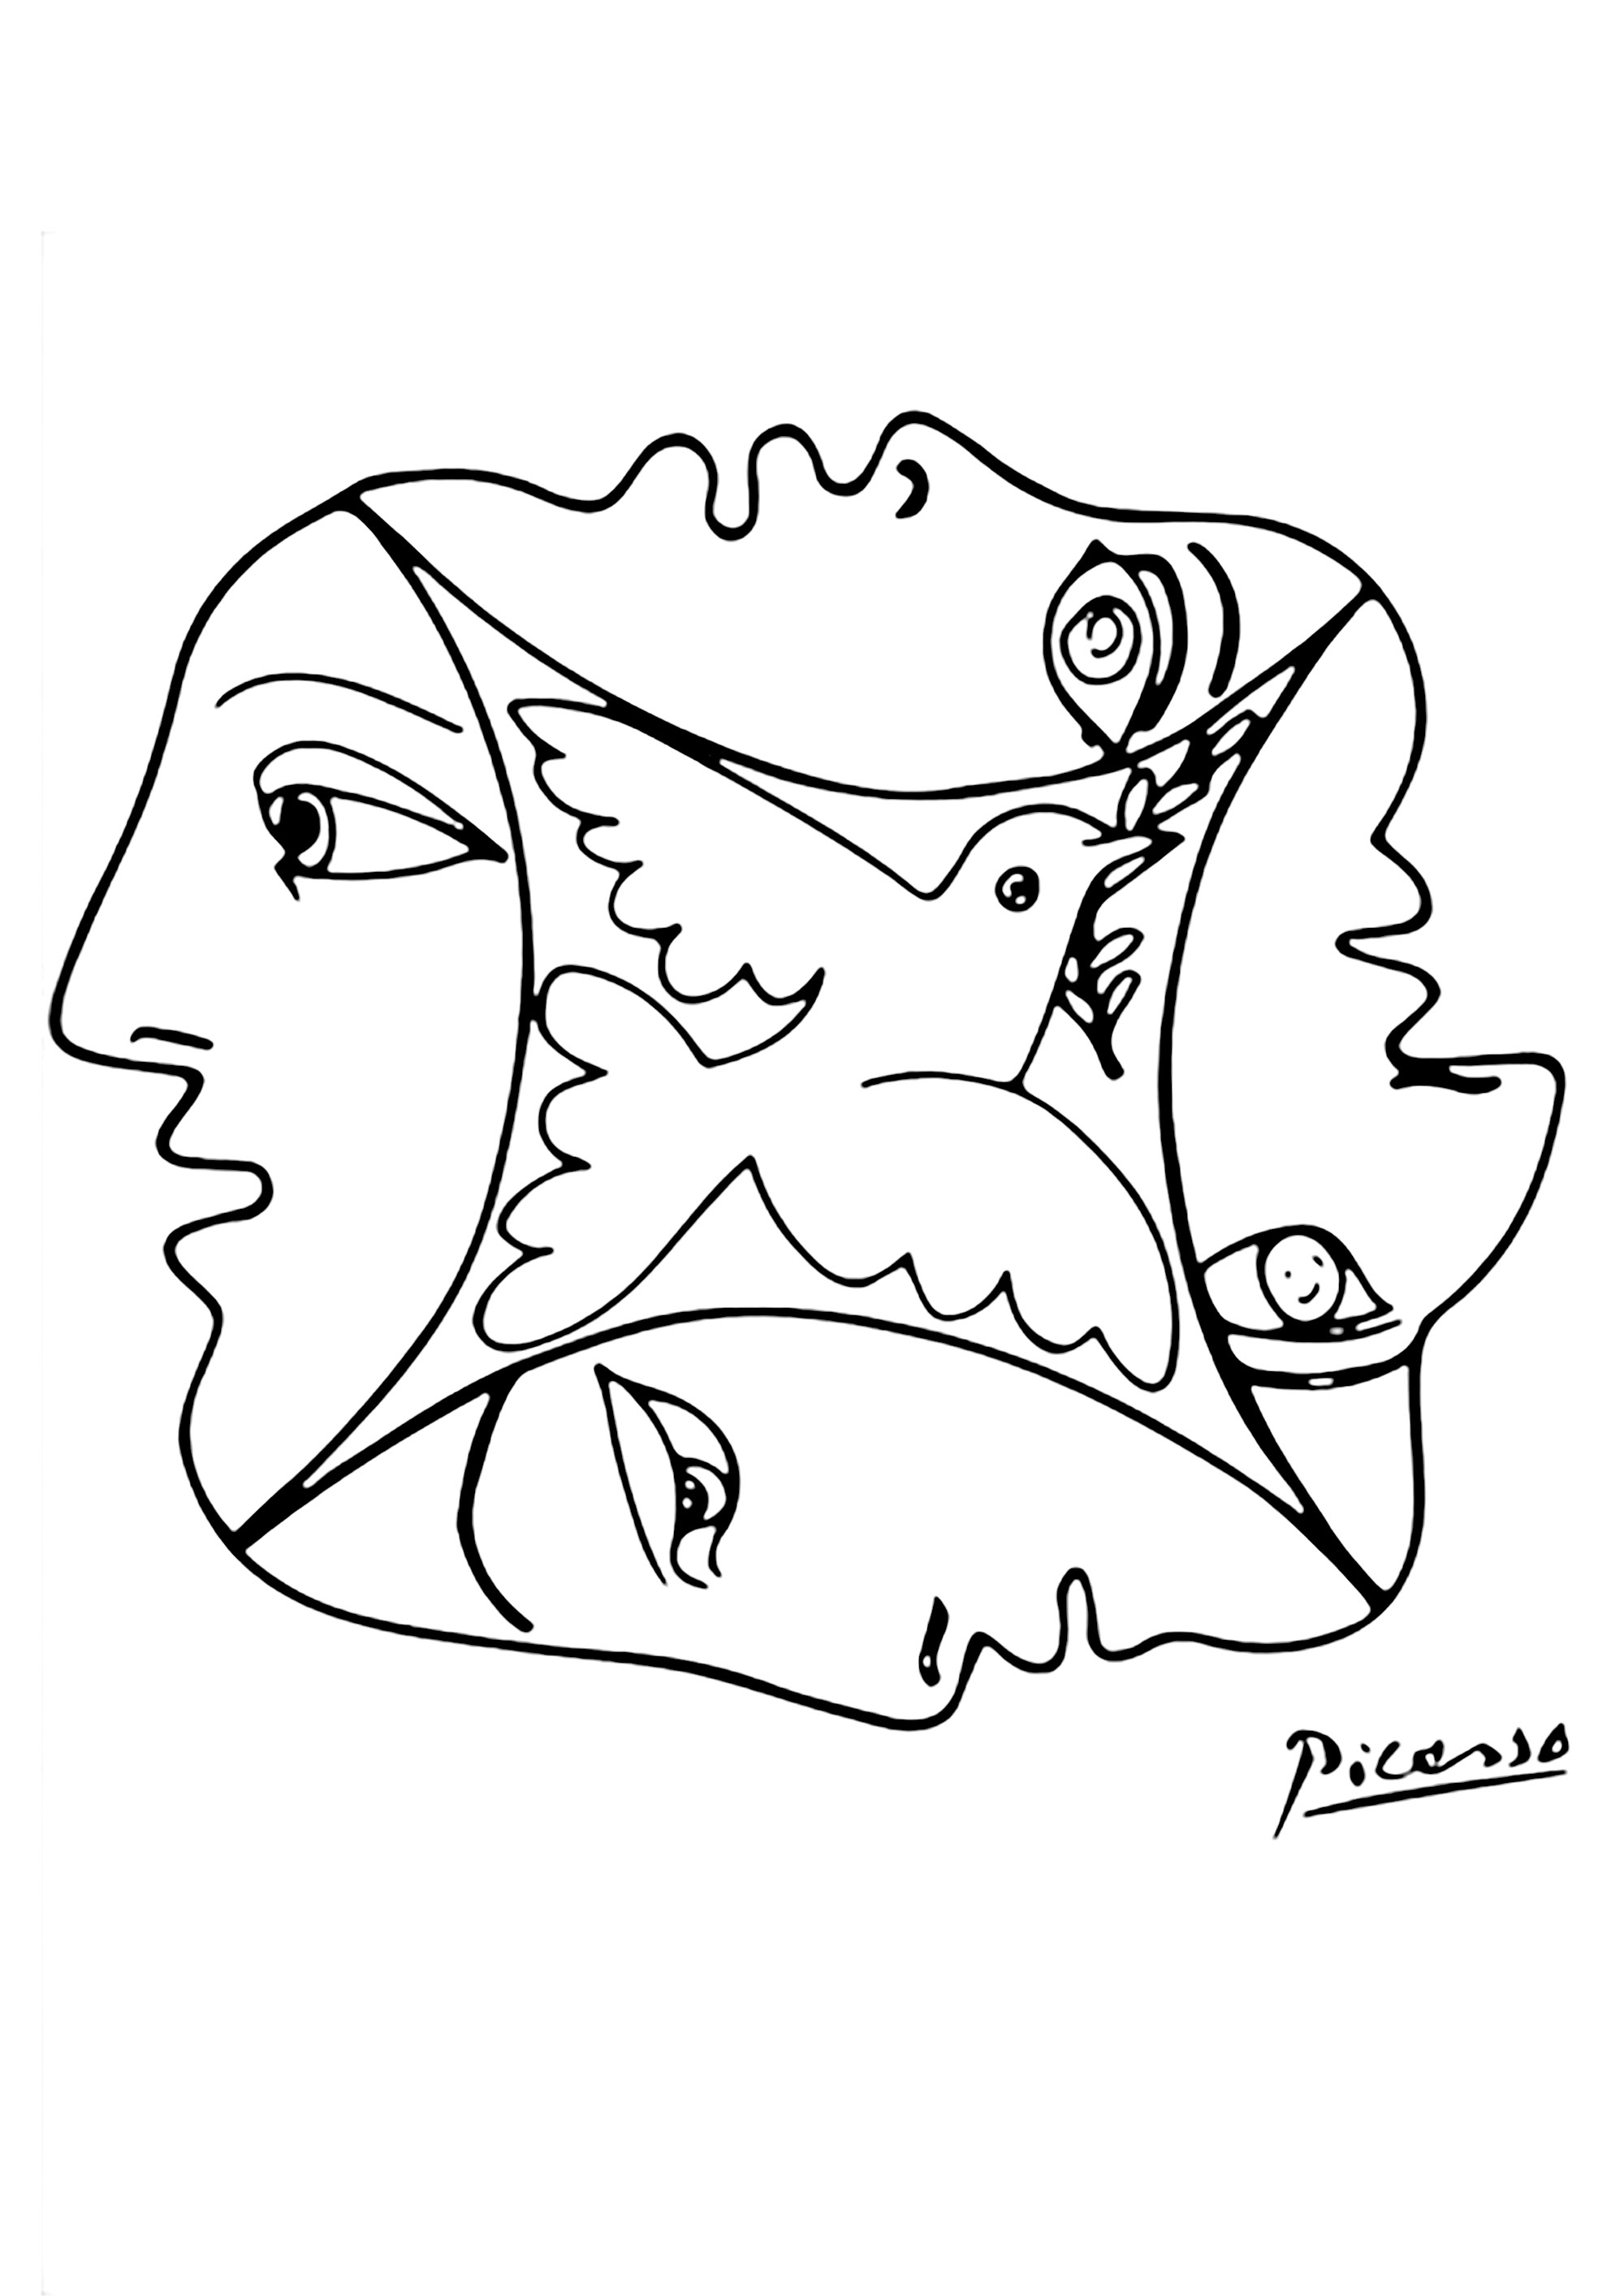 Coloração criada a partir de um desenho de Pablo Picasso com rostos e uma pomba. Magnífico desenho que simboliza a paz e a fraternidade